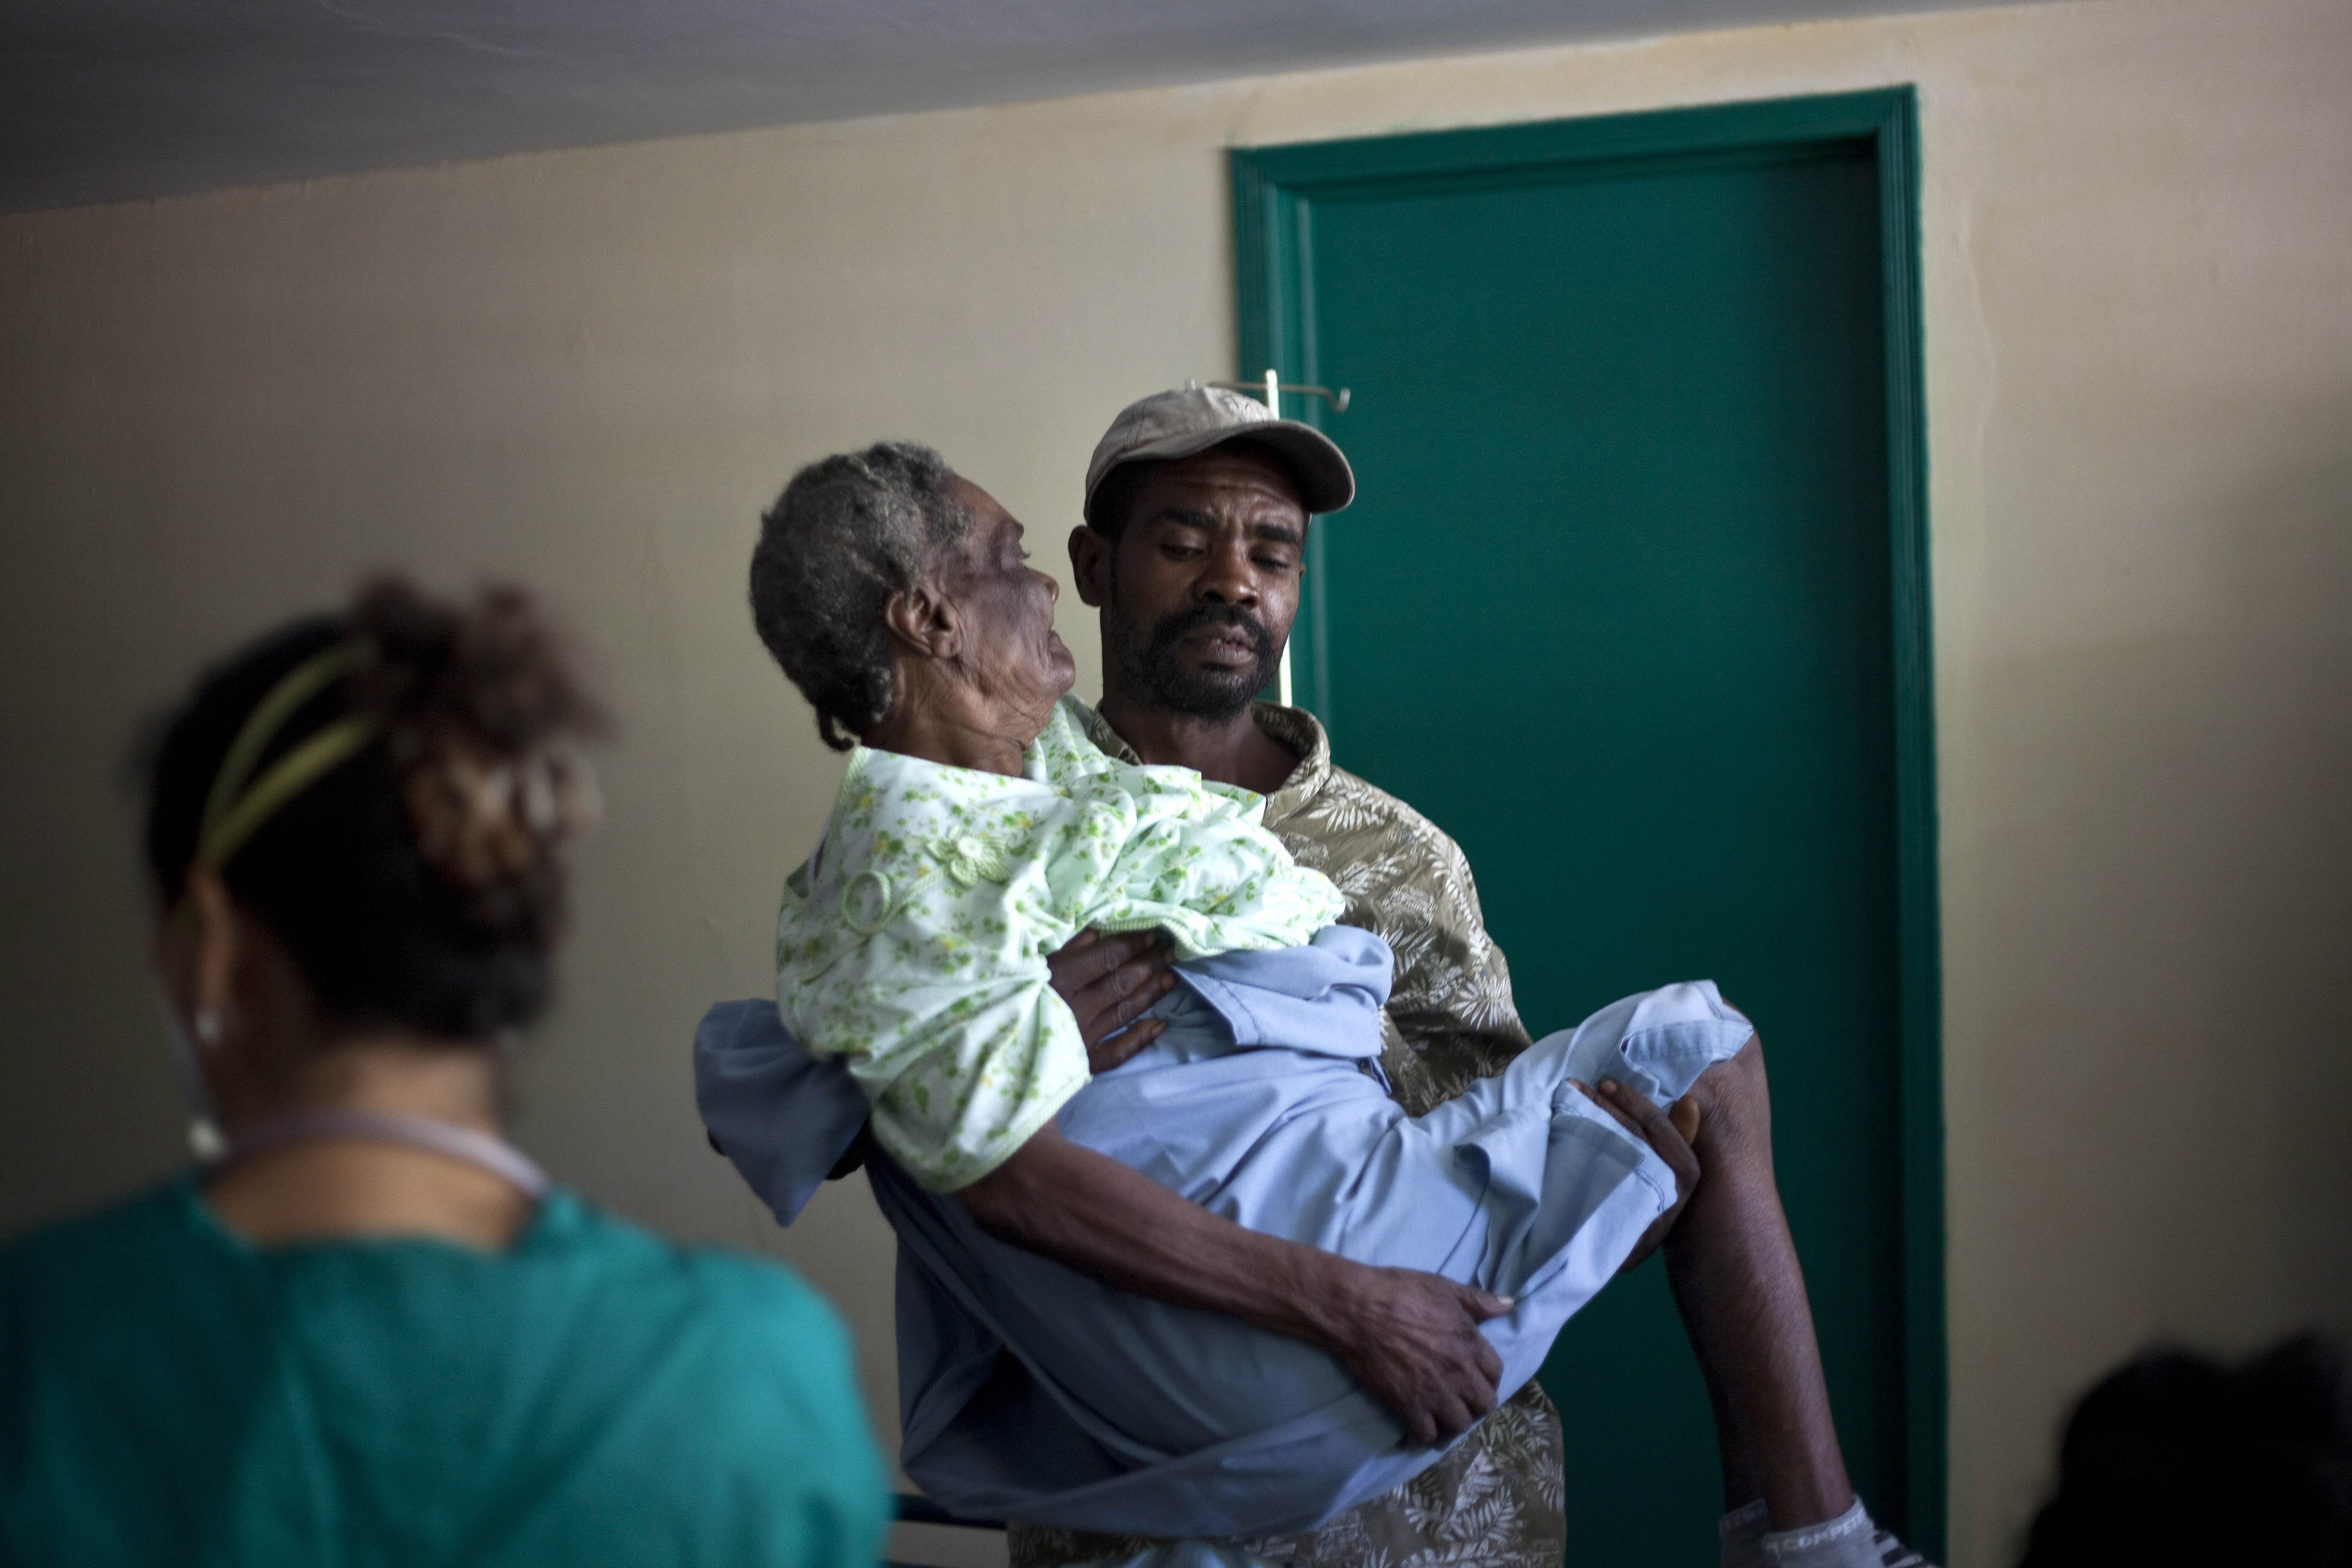 9/11/2010. Koleran slår stenhårt mot det redan hårt prövade Haiti. I början på november når smittan huvudstaden Port-au-Prince och dödsoffren blir snabbt allt fler. 